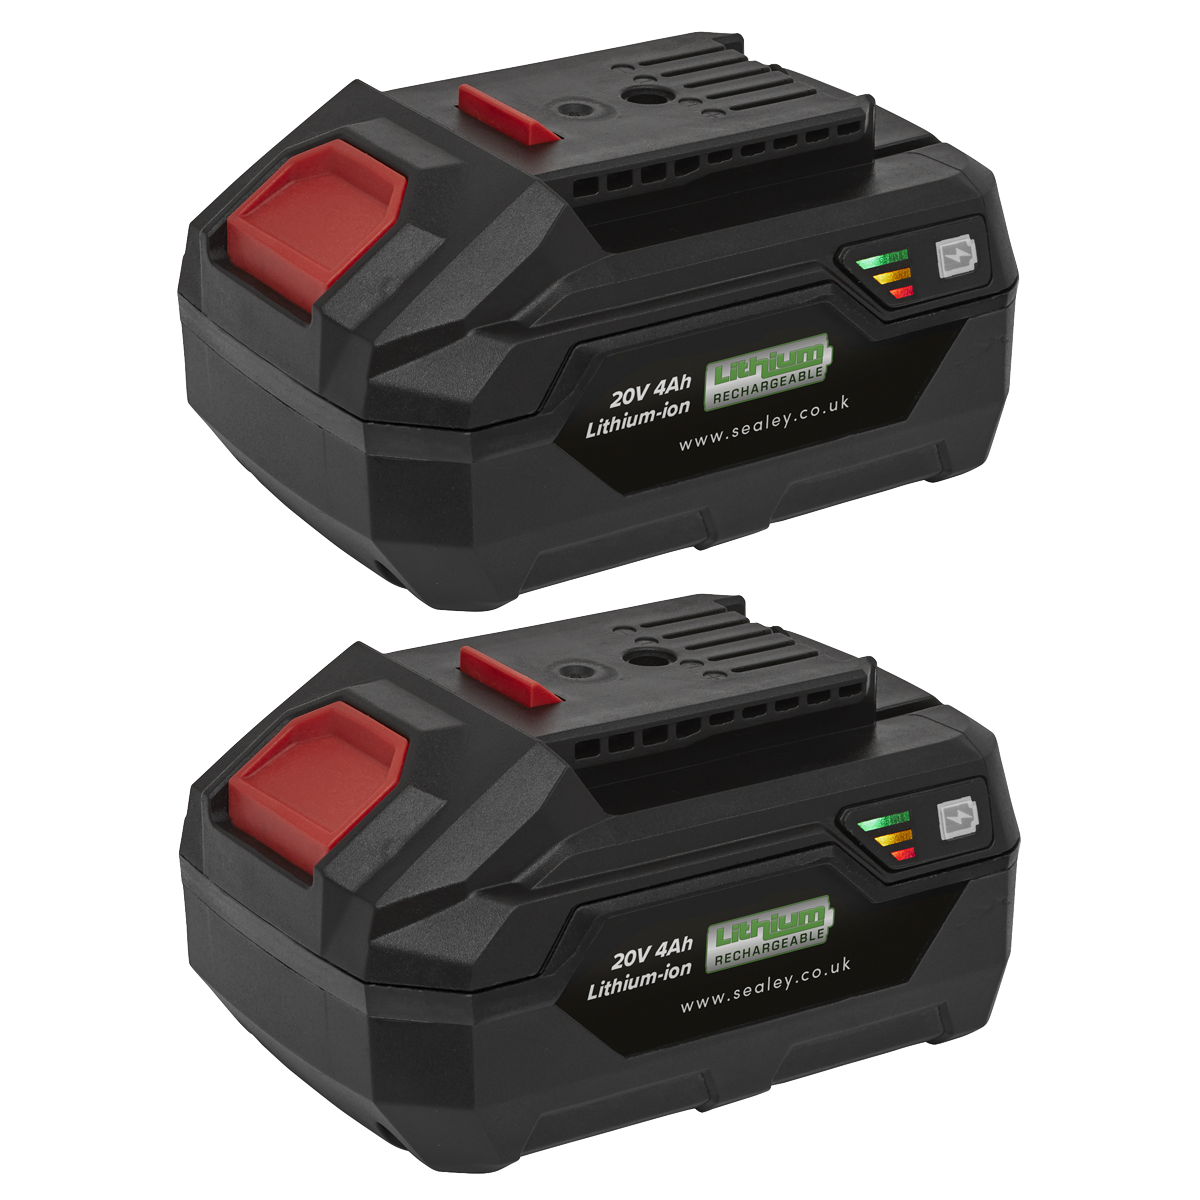 Power Tool Battery Pack 20V 2Ah Kit for SV20 Series